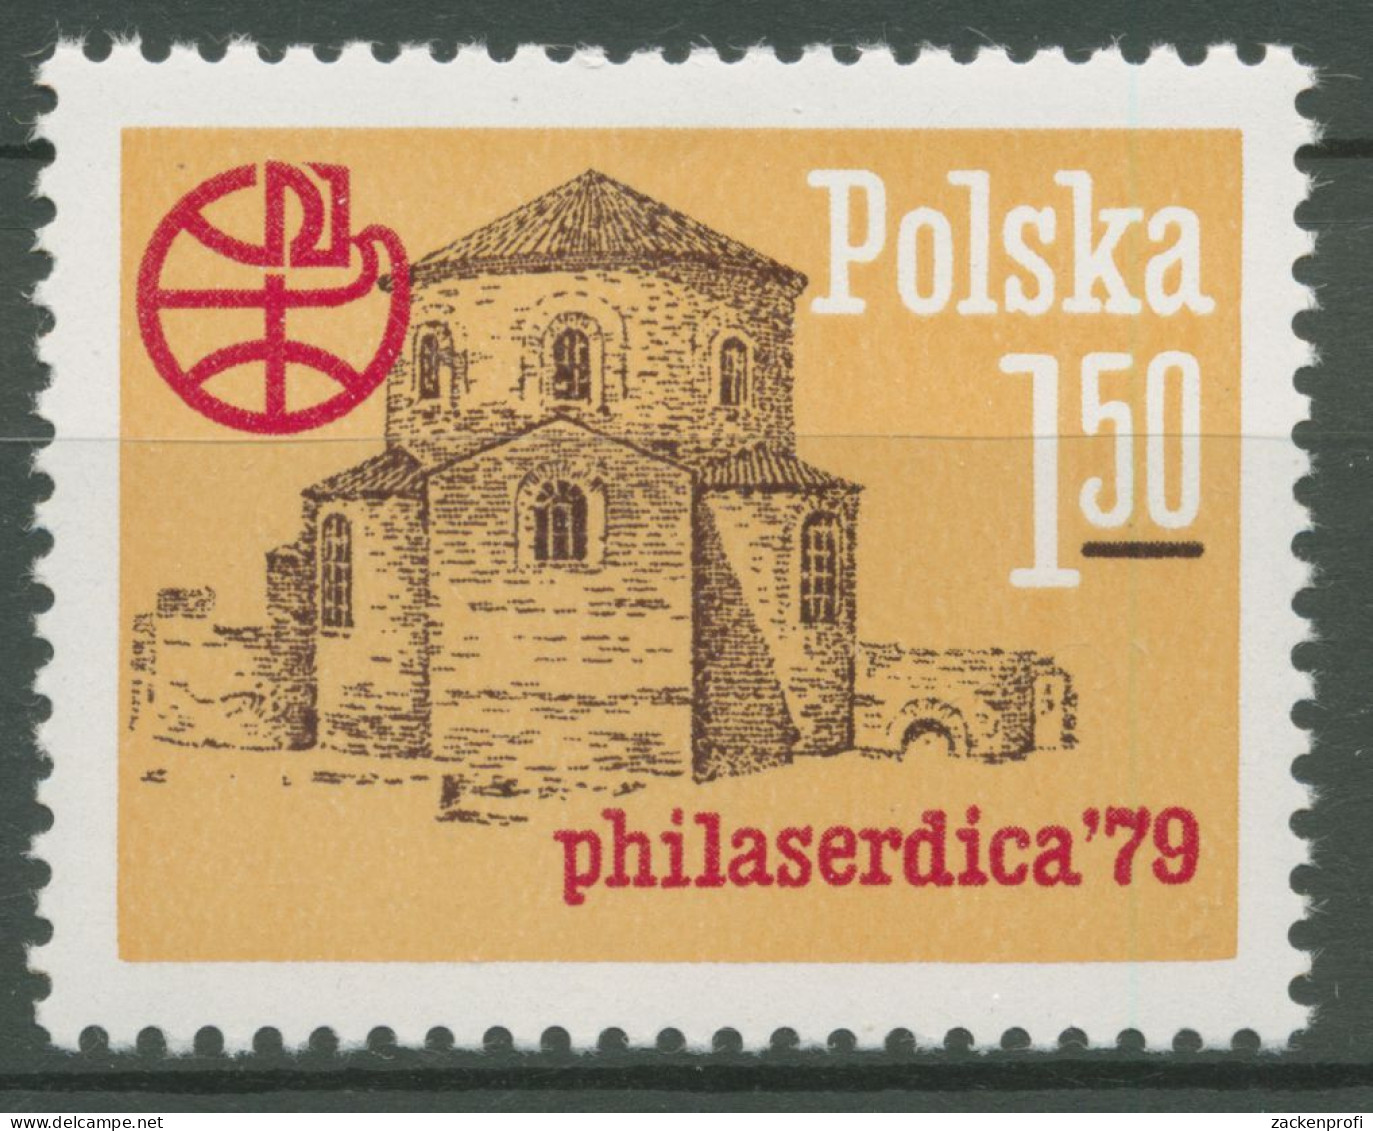 Polen 1979 PHILASERDICA Sofia St.-Georgs-Kirche 2627 Postfrisch - Ungebraucht